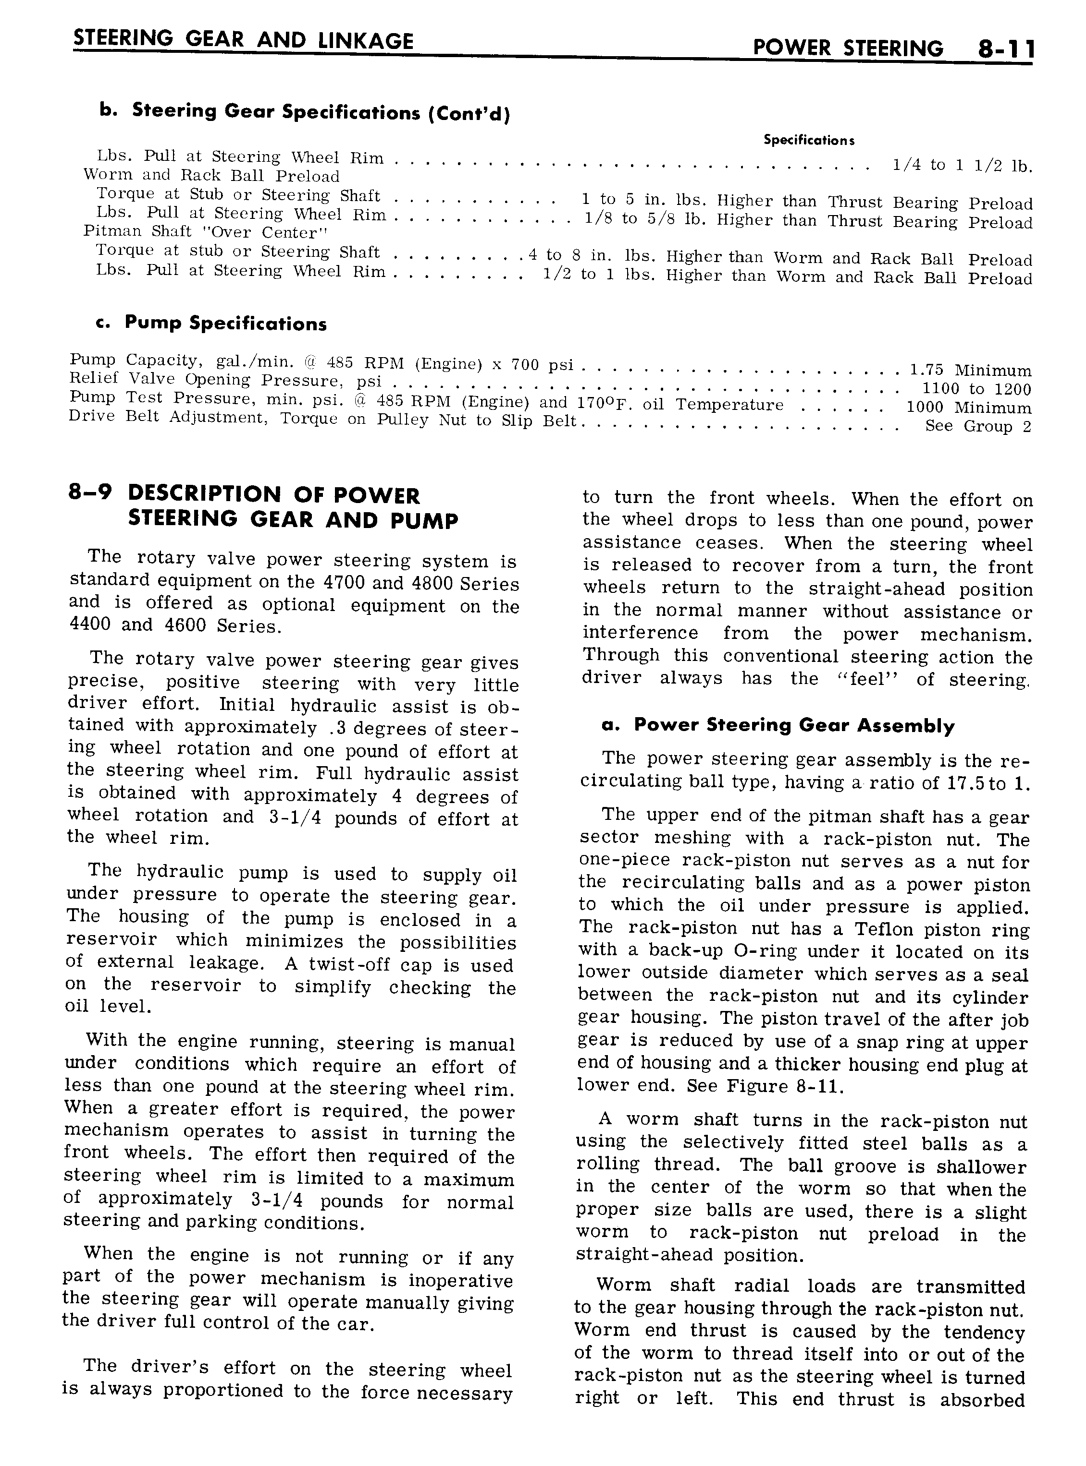 n_08 1961 Buick Shop Manual - Steering-011-011.jpg